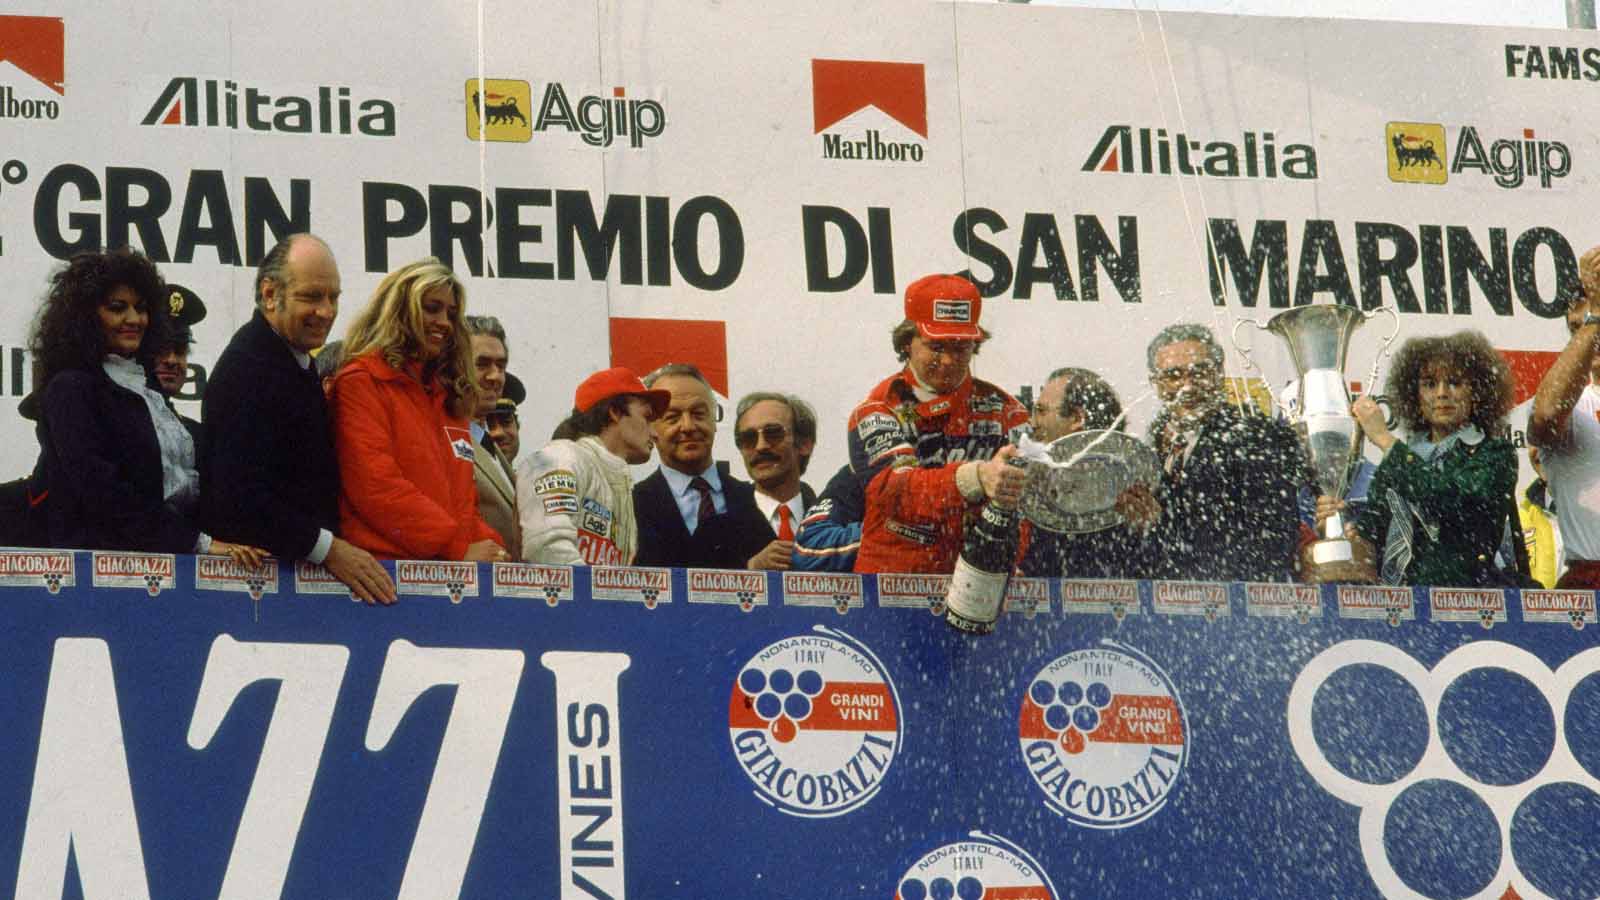 Didier Pironi ir Gilles Villeneuve ant pakylos.  San Marinas 1982 m.